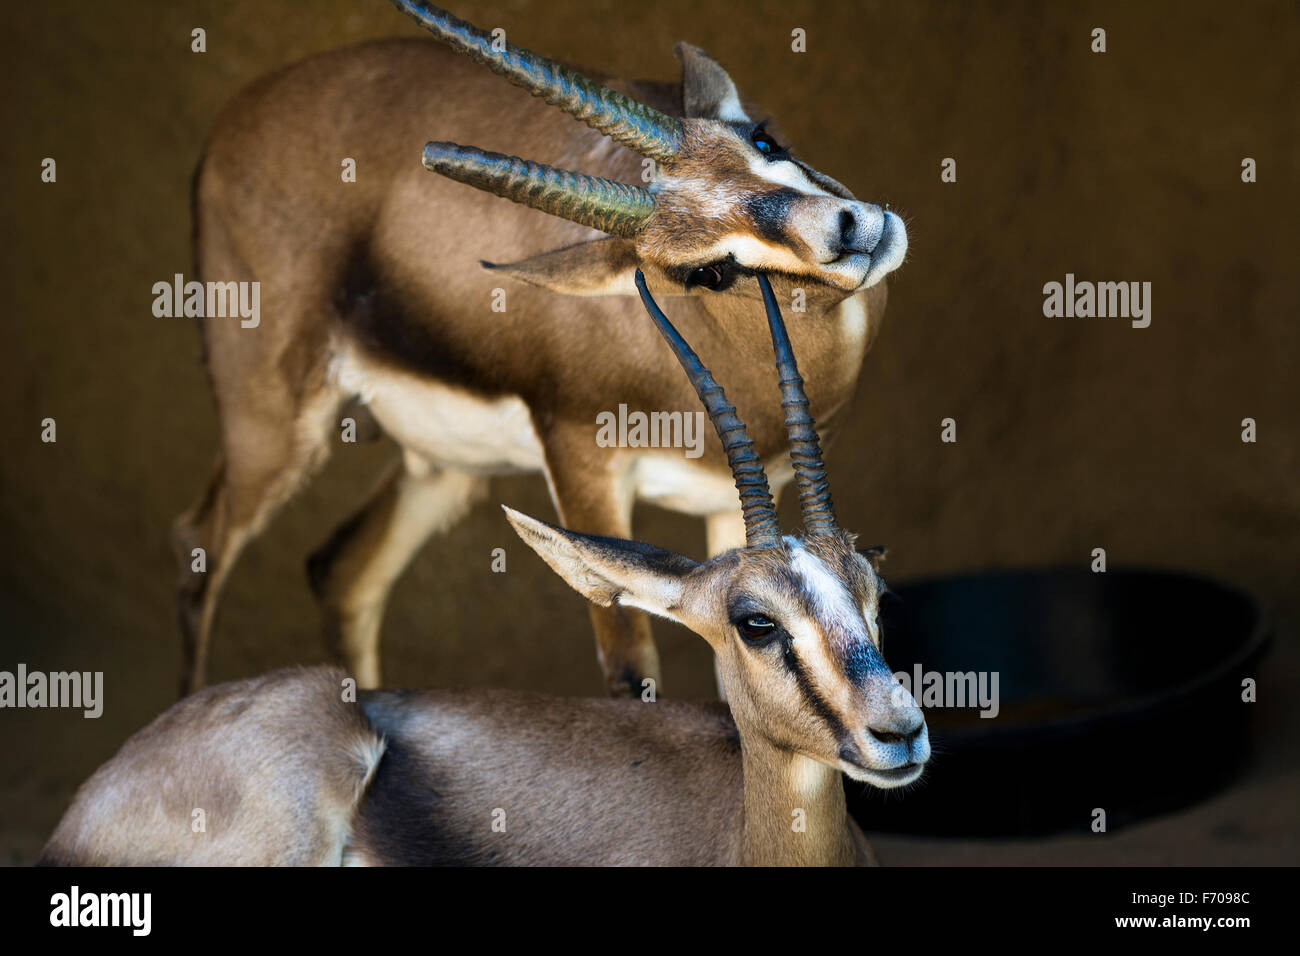 Zwei Gazellen ruhen in einem schattigen Bereich, während man sein Kinn auf dem Horn von einem anderen Gazelle kratzt. Stockfoto